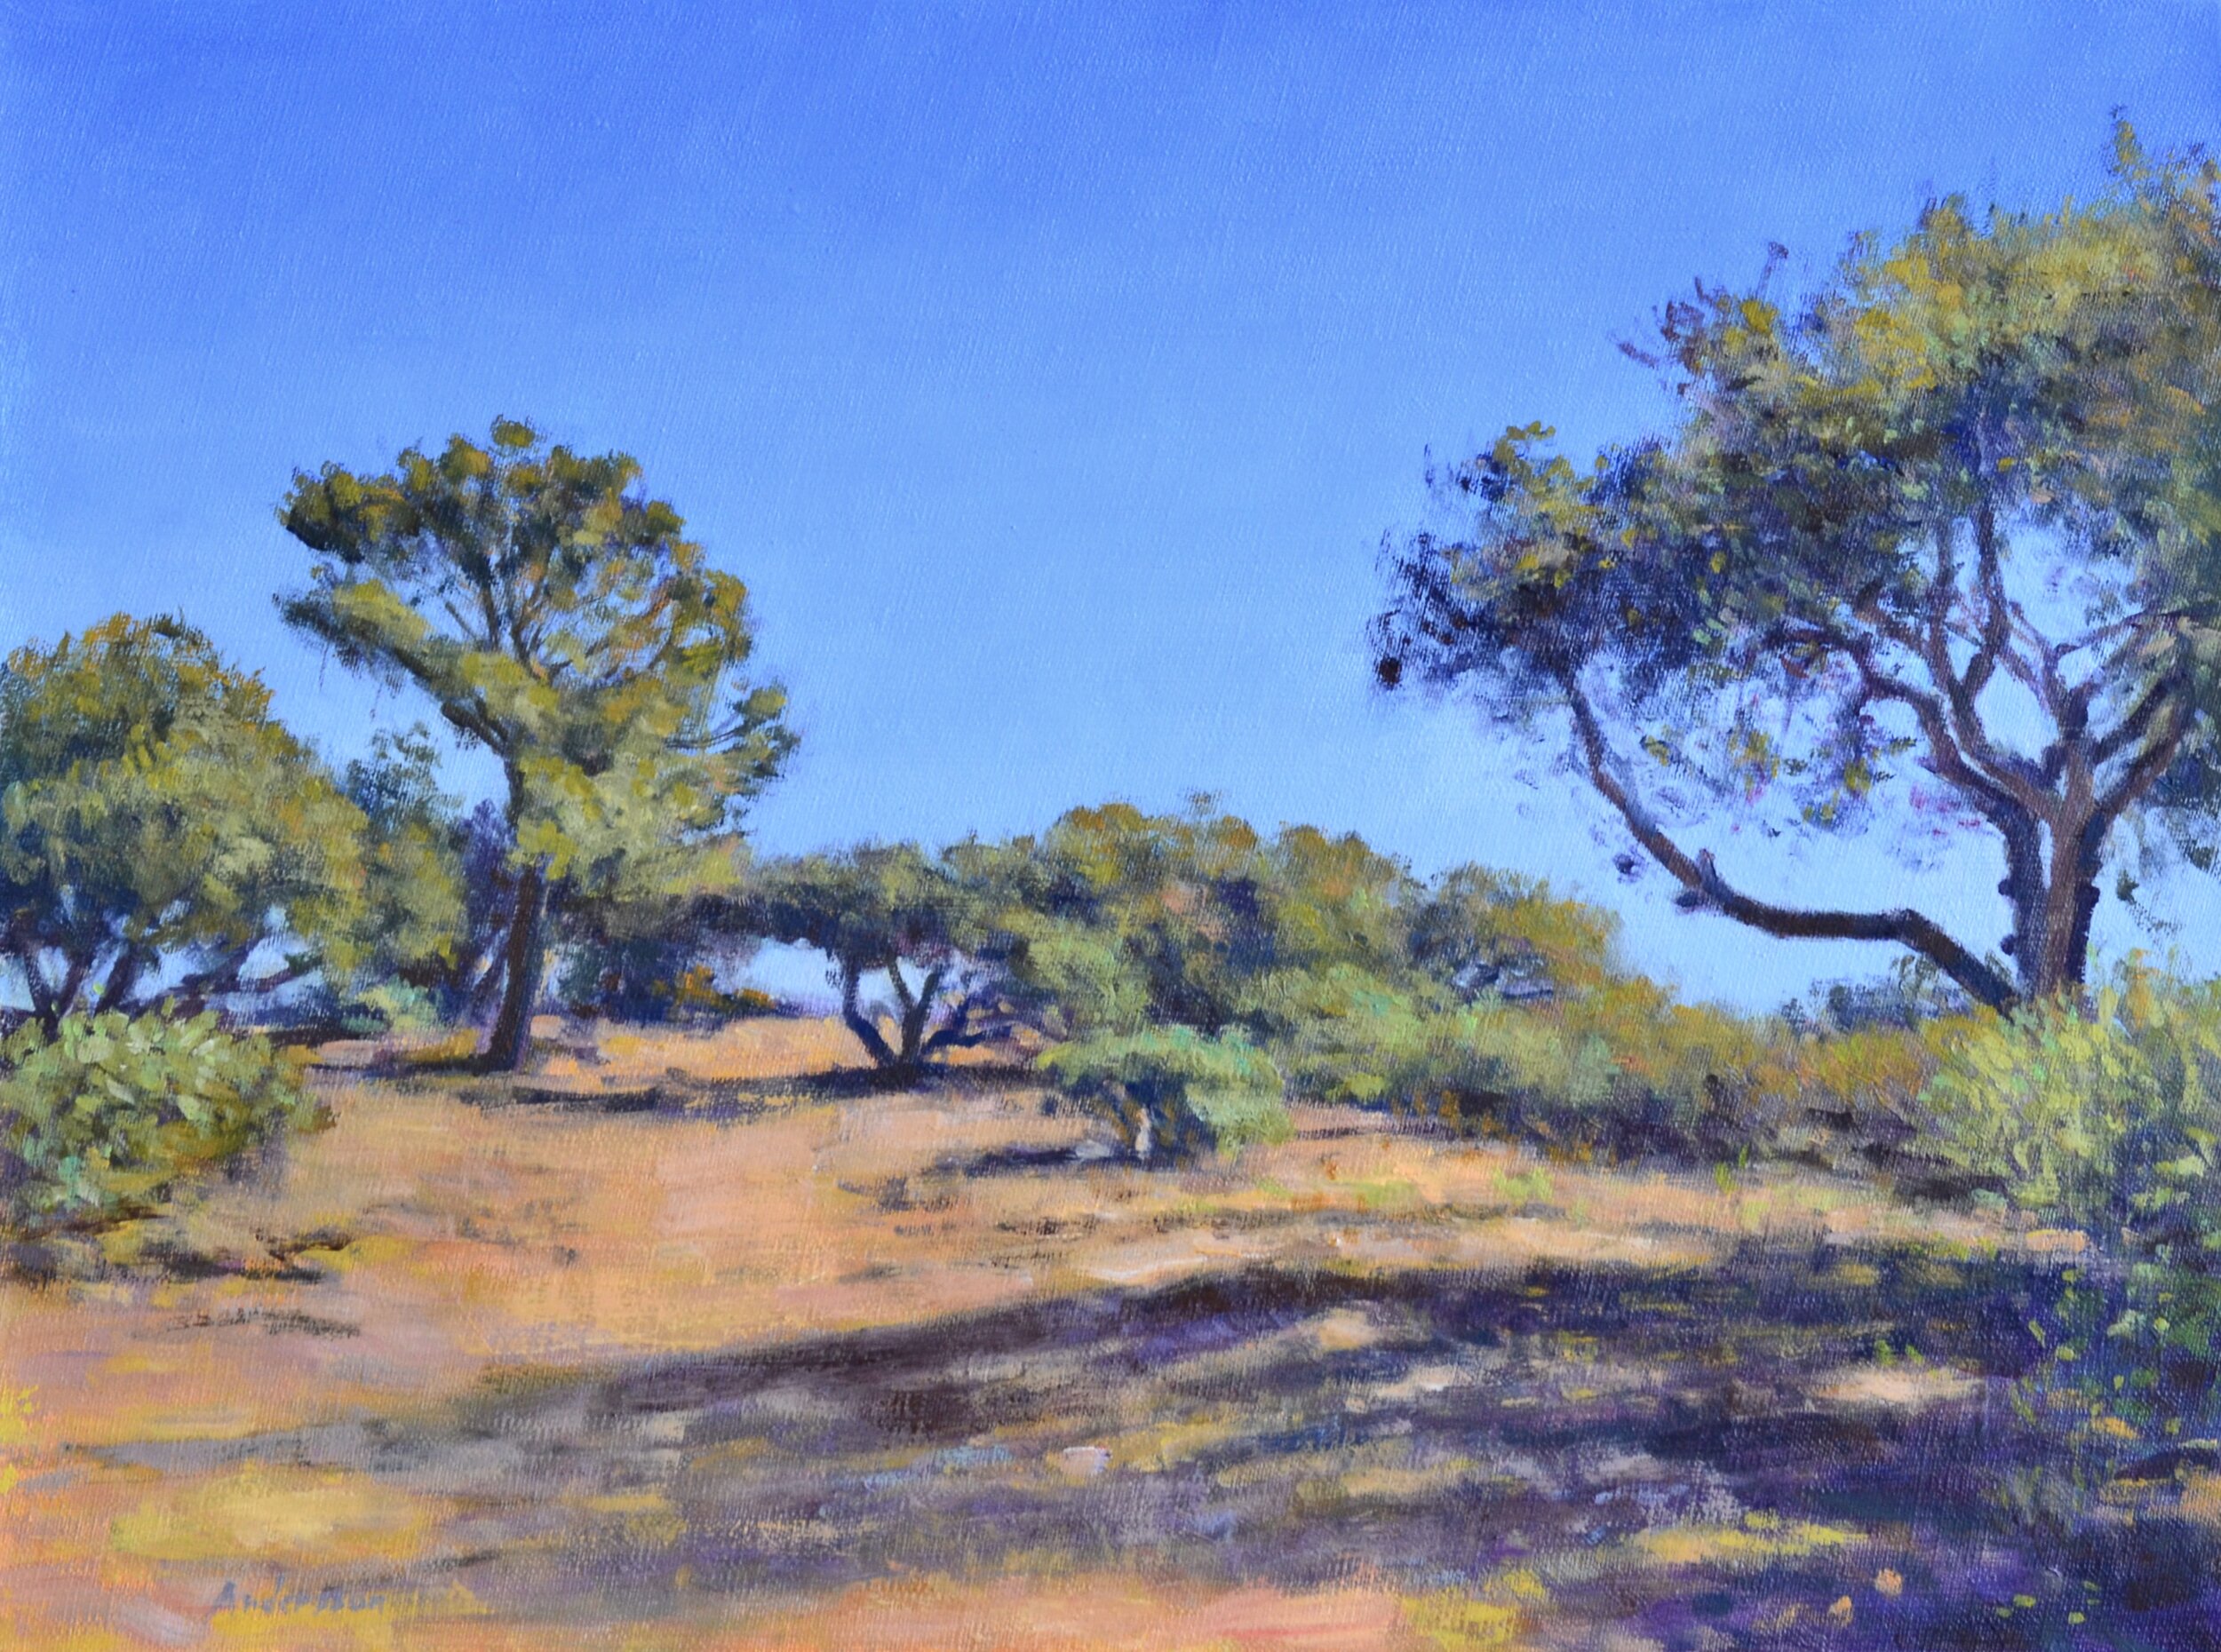 Neil W. Andersson, "La Purisima Trail," Oil on linen